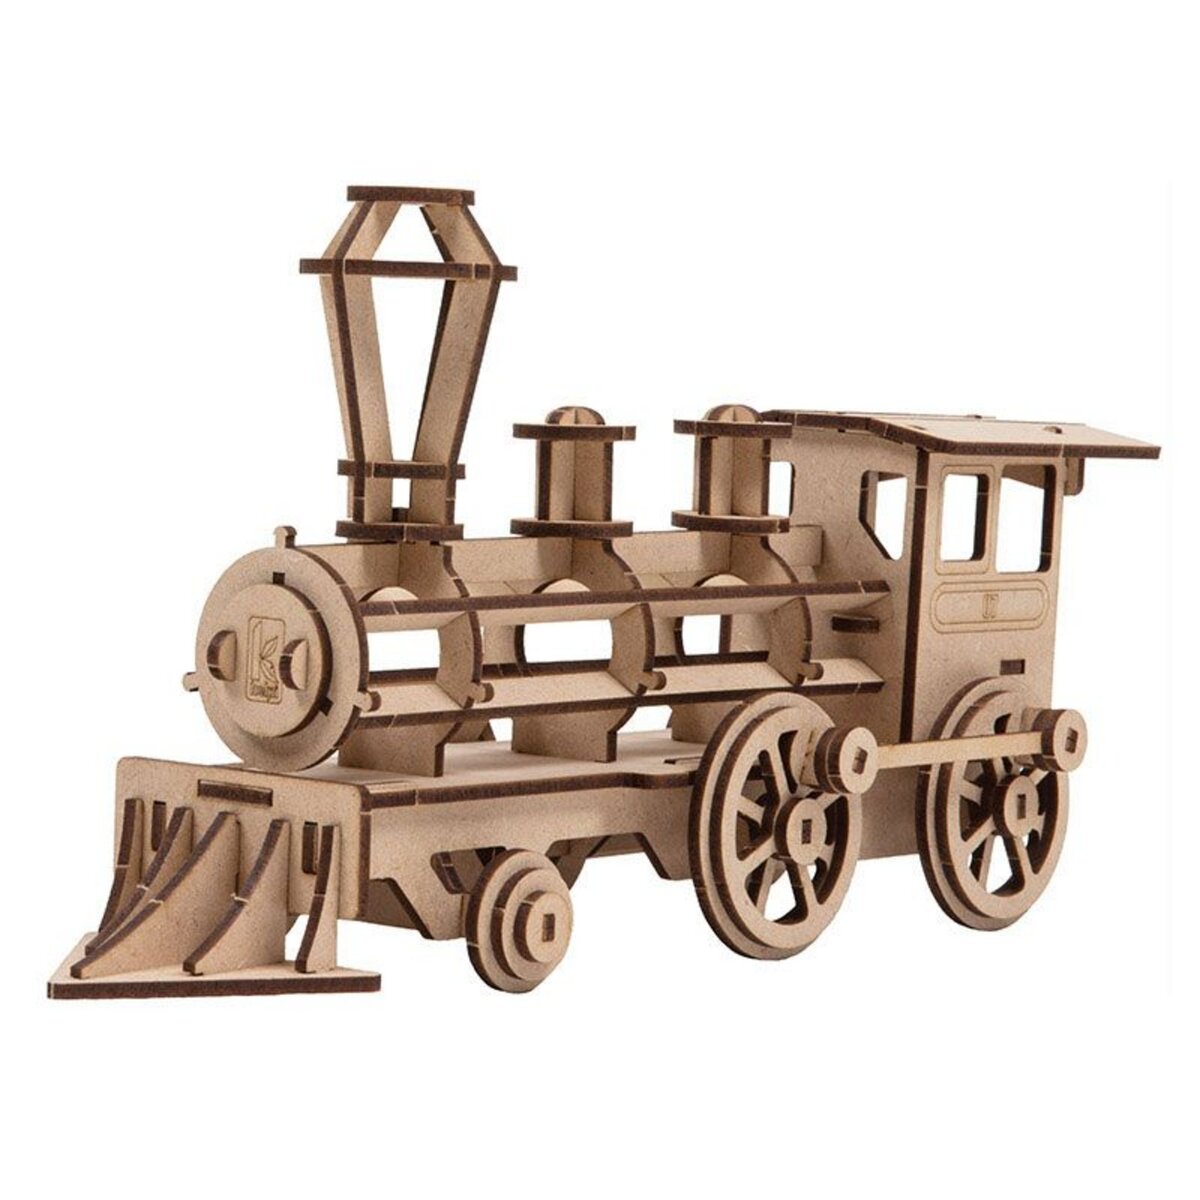  Maquette 3D en bois MDF - Locomotive - 38 x 13 cm